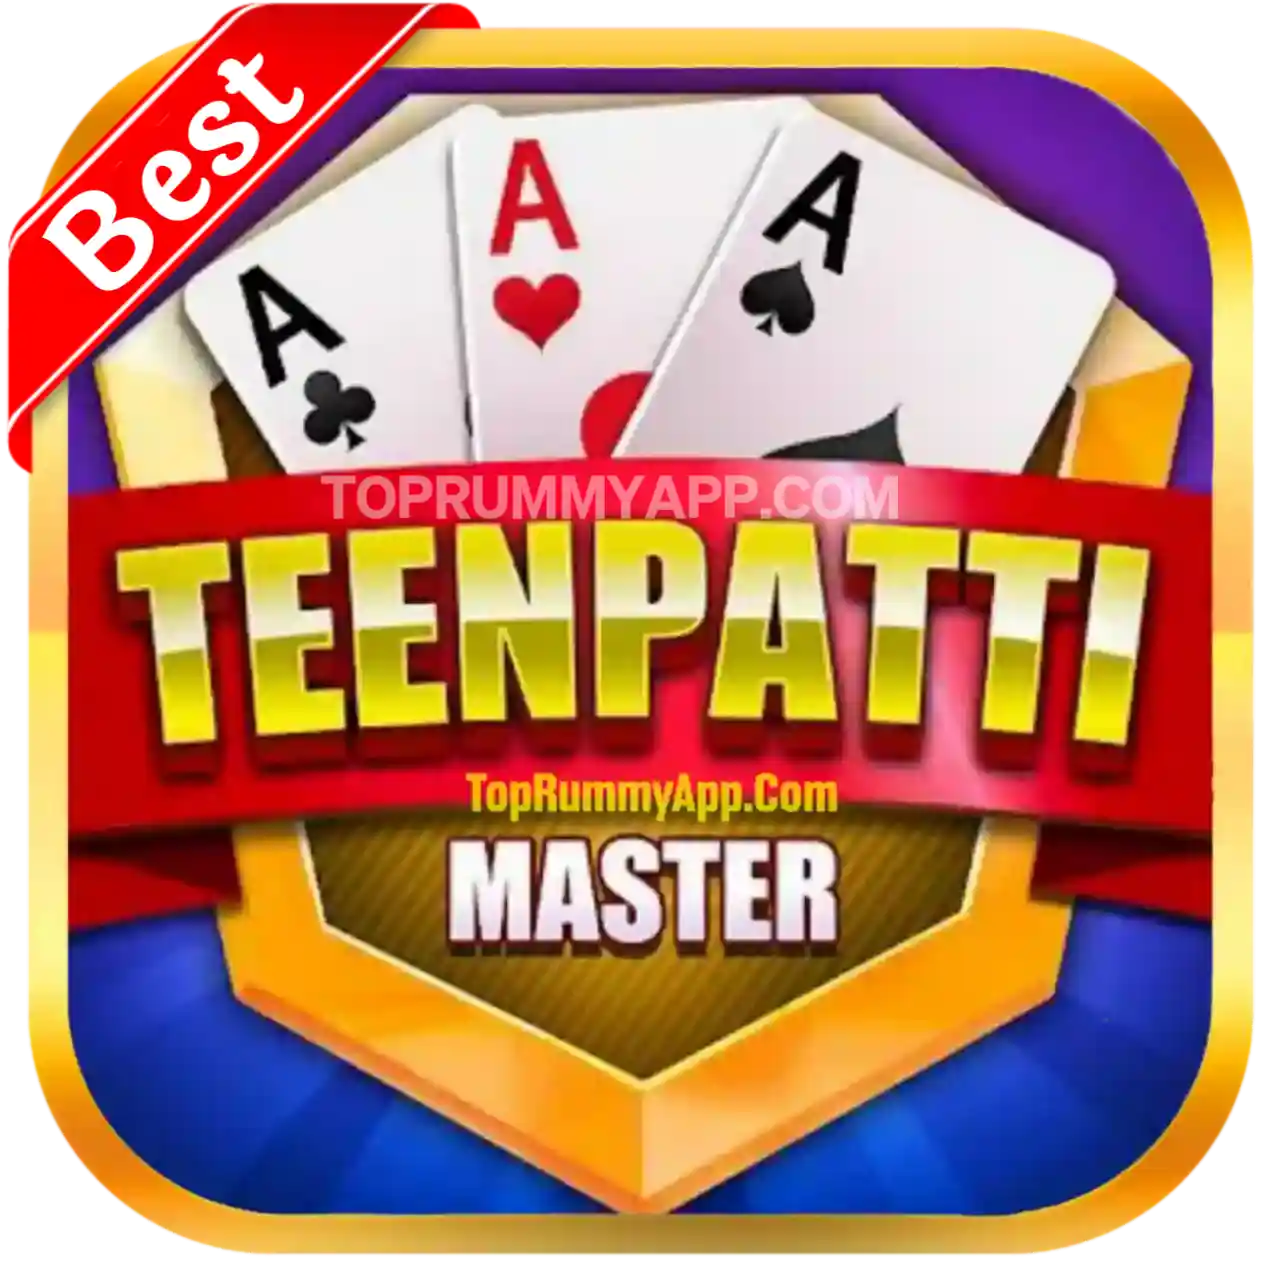 Teen Patti Master Apk Download - Top 20 Teen Patti App List